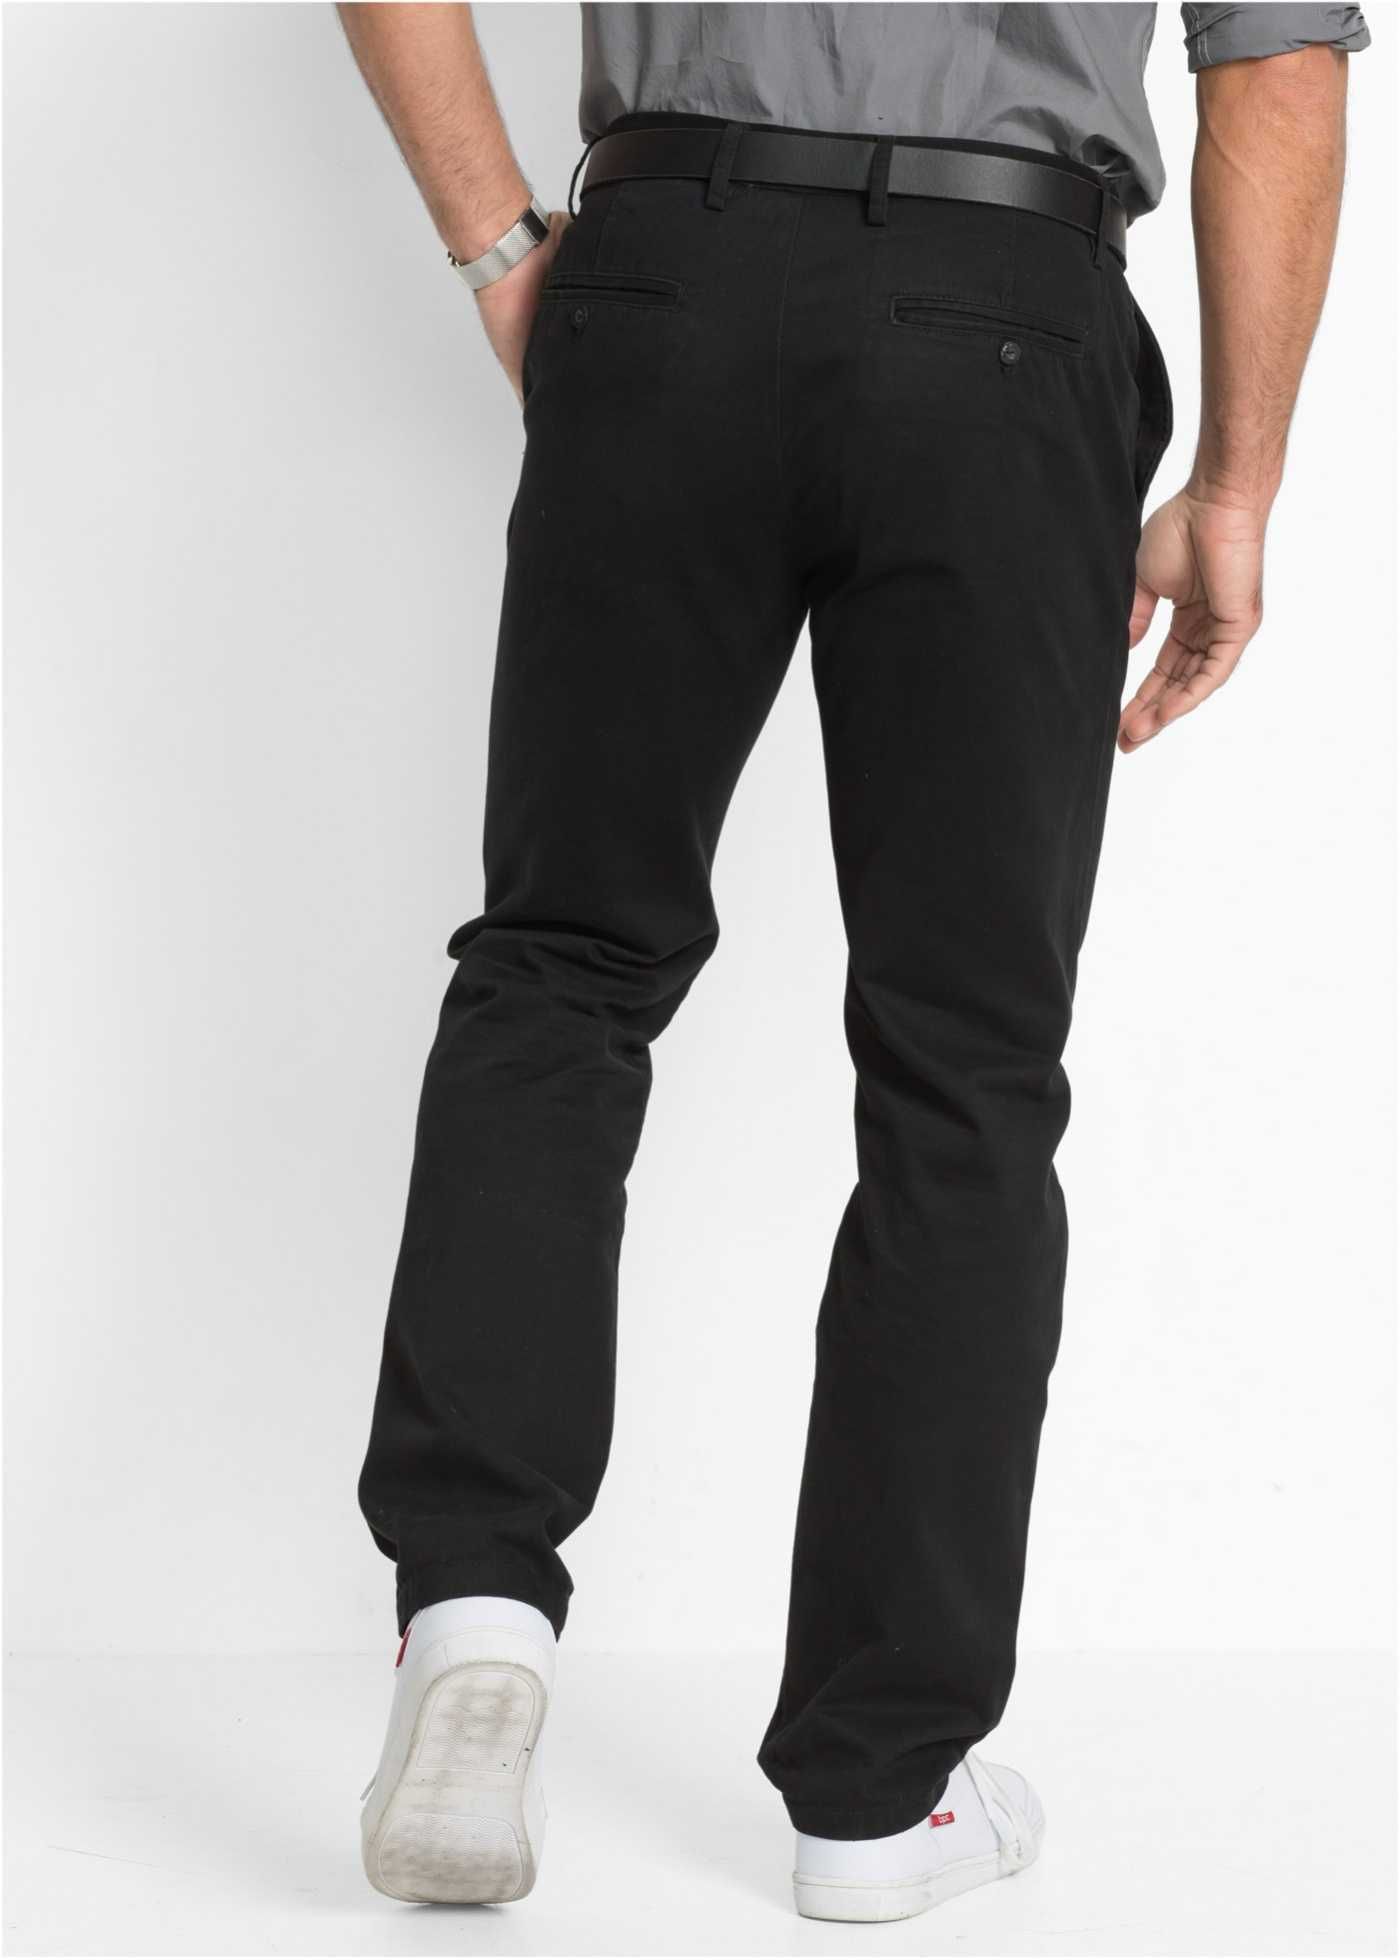 Spodnie czarne 100% Bawełna Rozmiar 28/56 na niskie osoby.